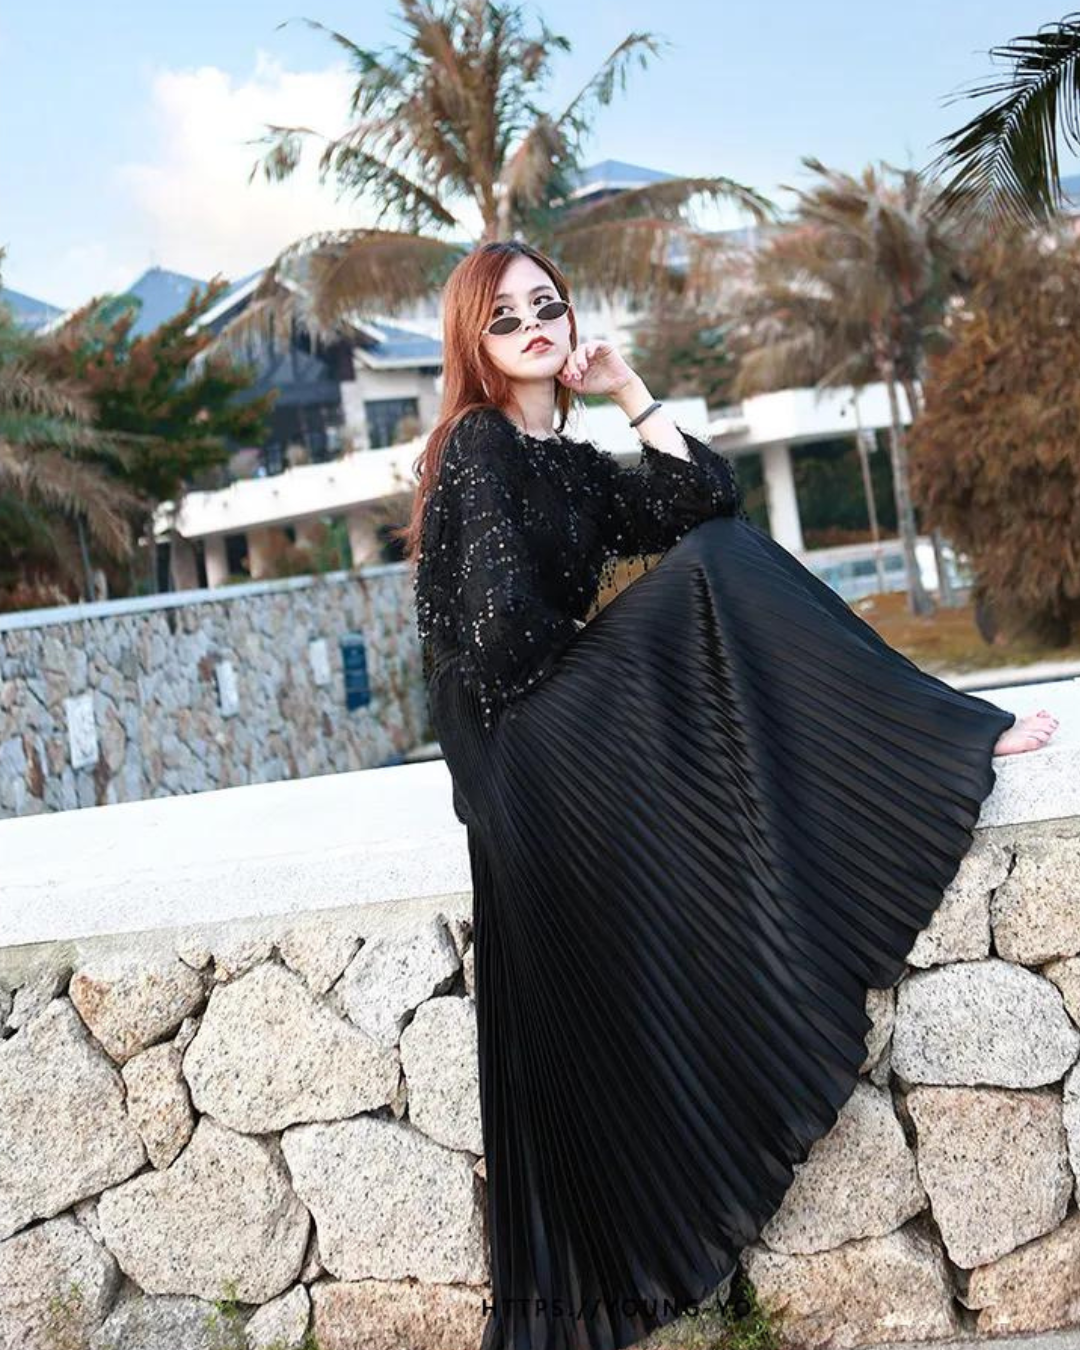 Saia Plissada Elegante - Bellatrix Glamour™ / Para mulheres que apreciam elegância em cada detalhe.